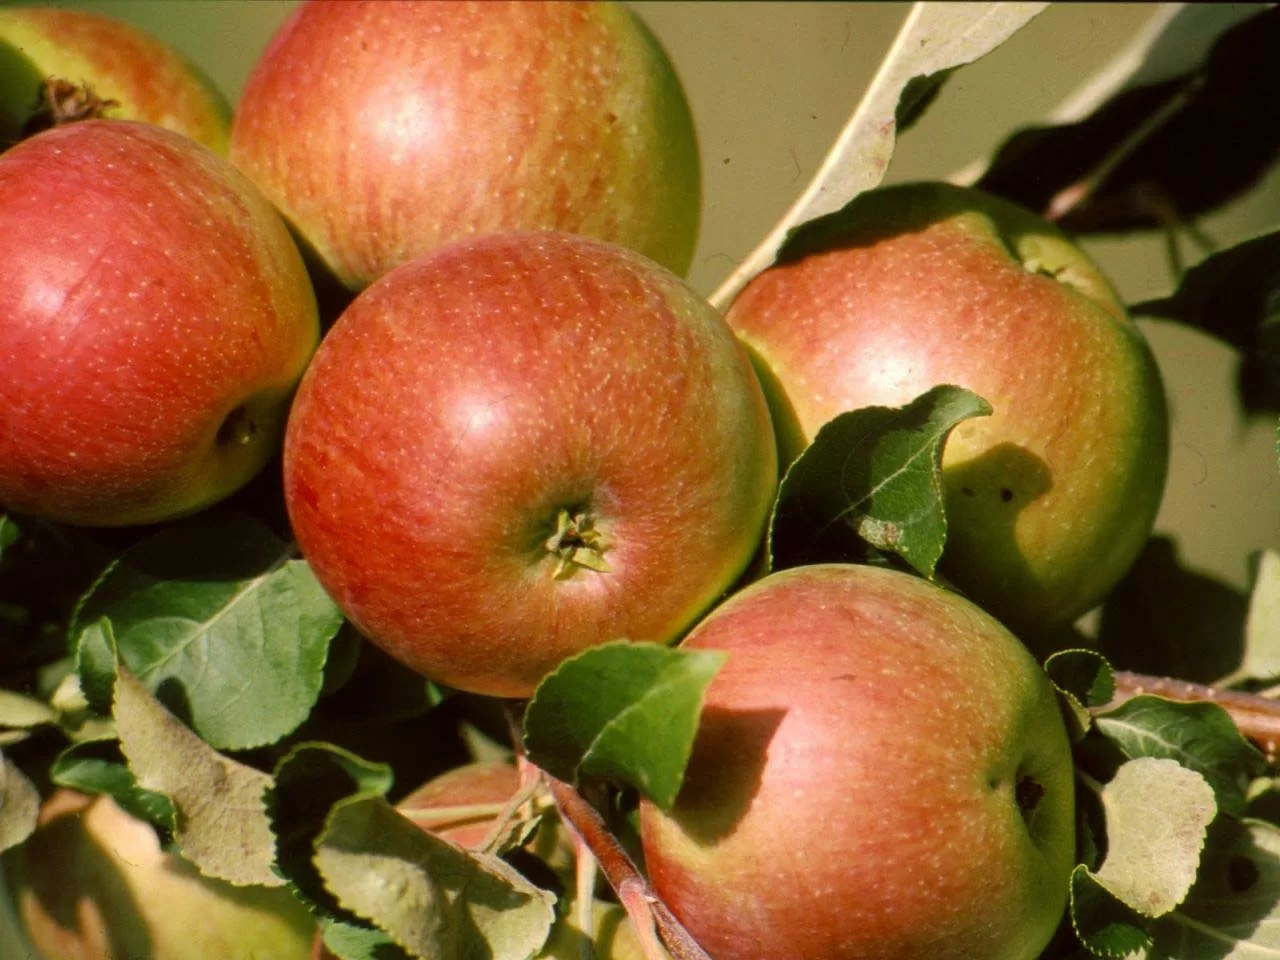 Правильная посадка яблони осенью. многолетний опыт садоводов